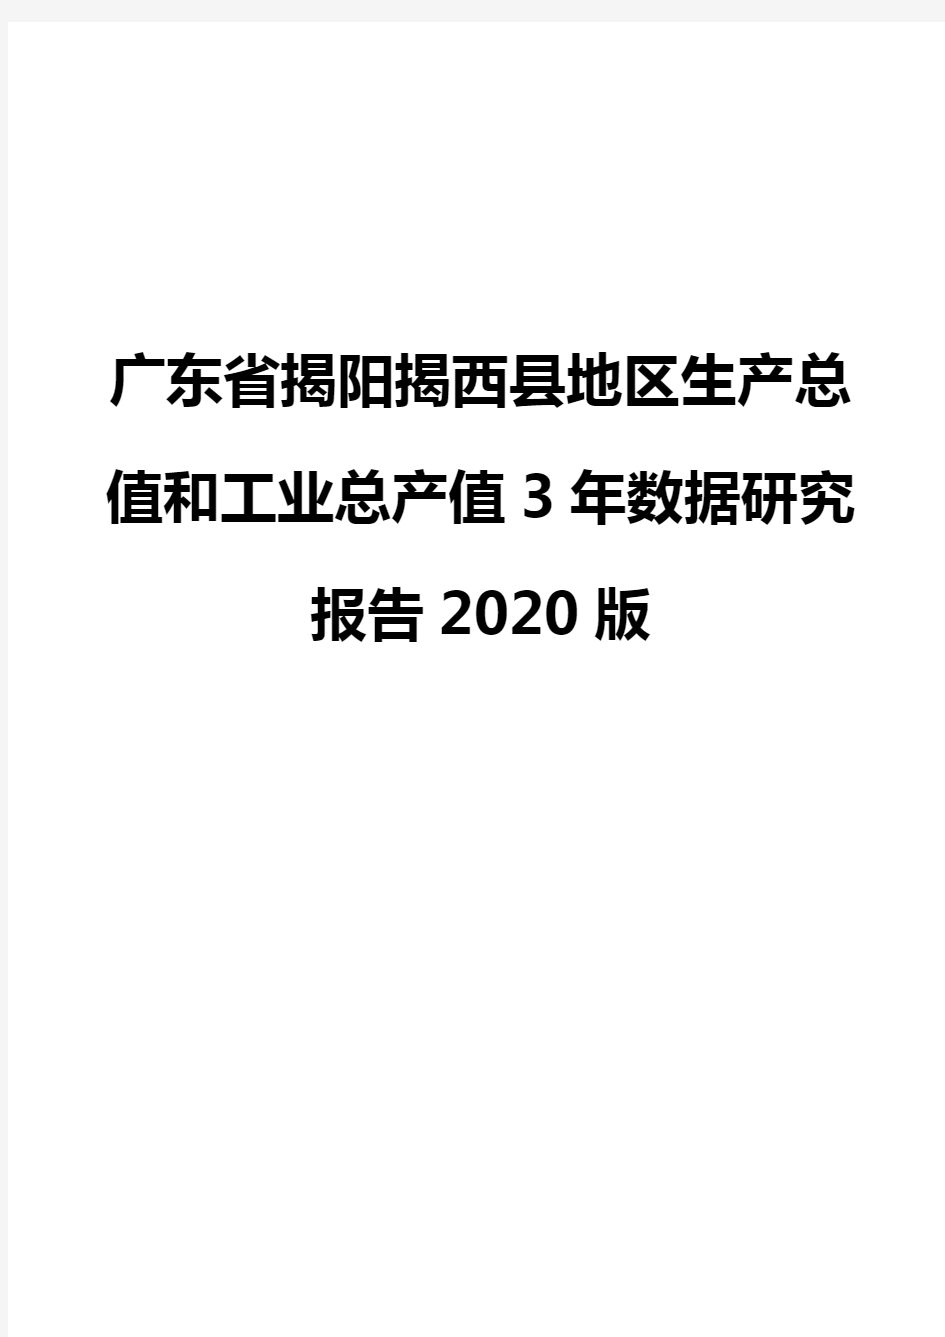 广东省揭阳揭西县地区生产总值和工业总产值3年数据研究报告2020版